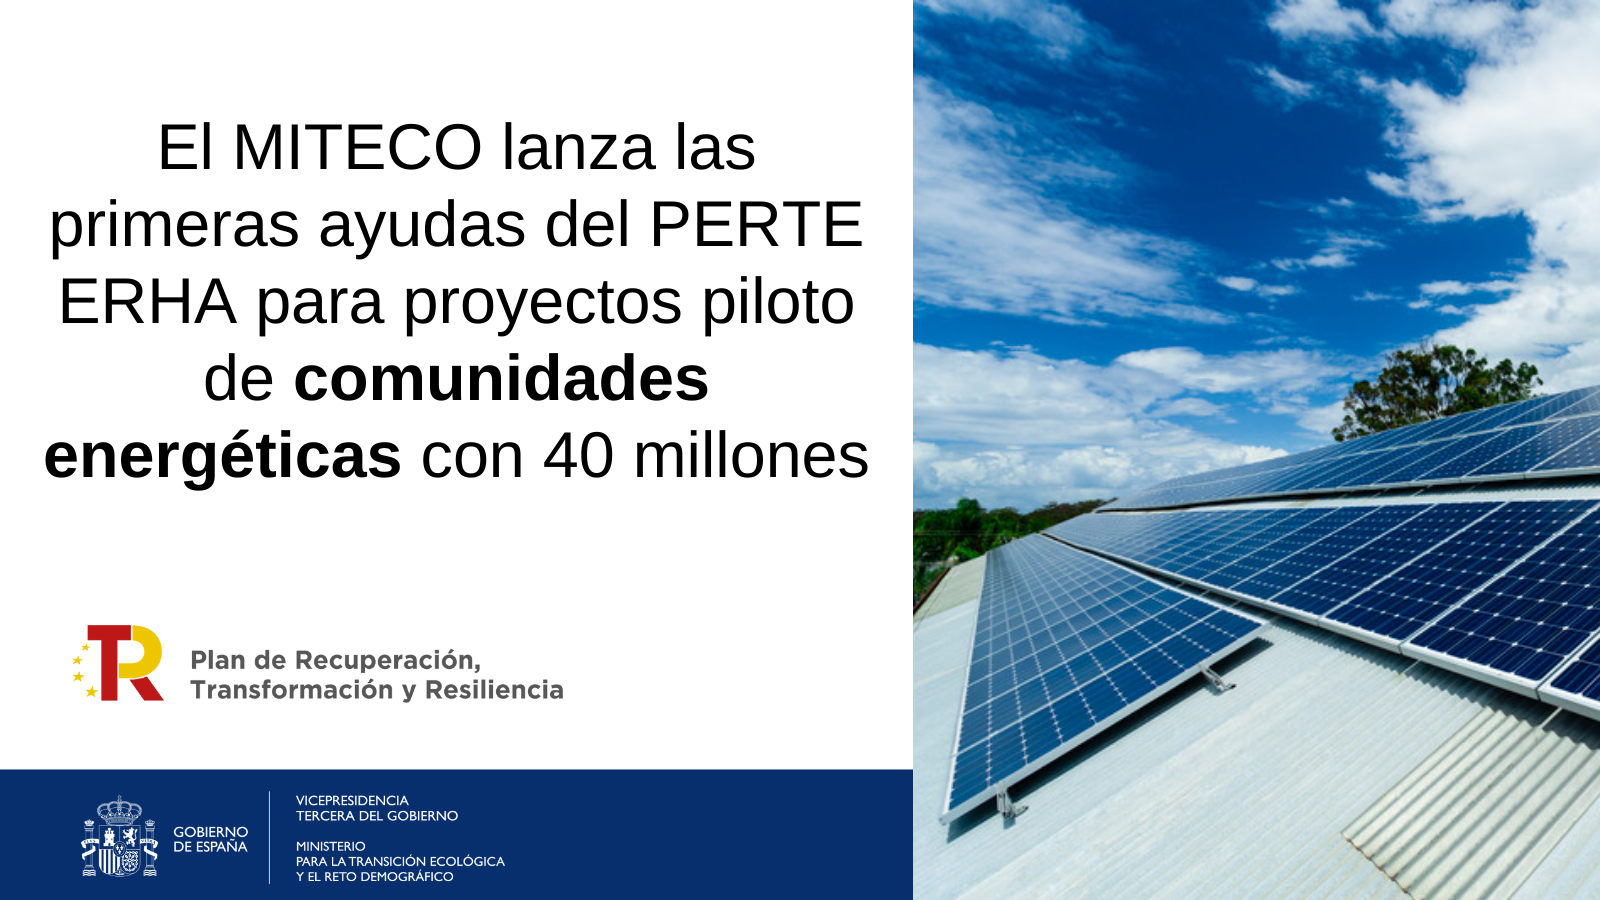 PERTE EHRA comunidades energeticasEl MITECO lanza las primeras ayudas del PERTE ERHA para proyectos piloto de comunidades energéticas